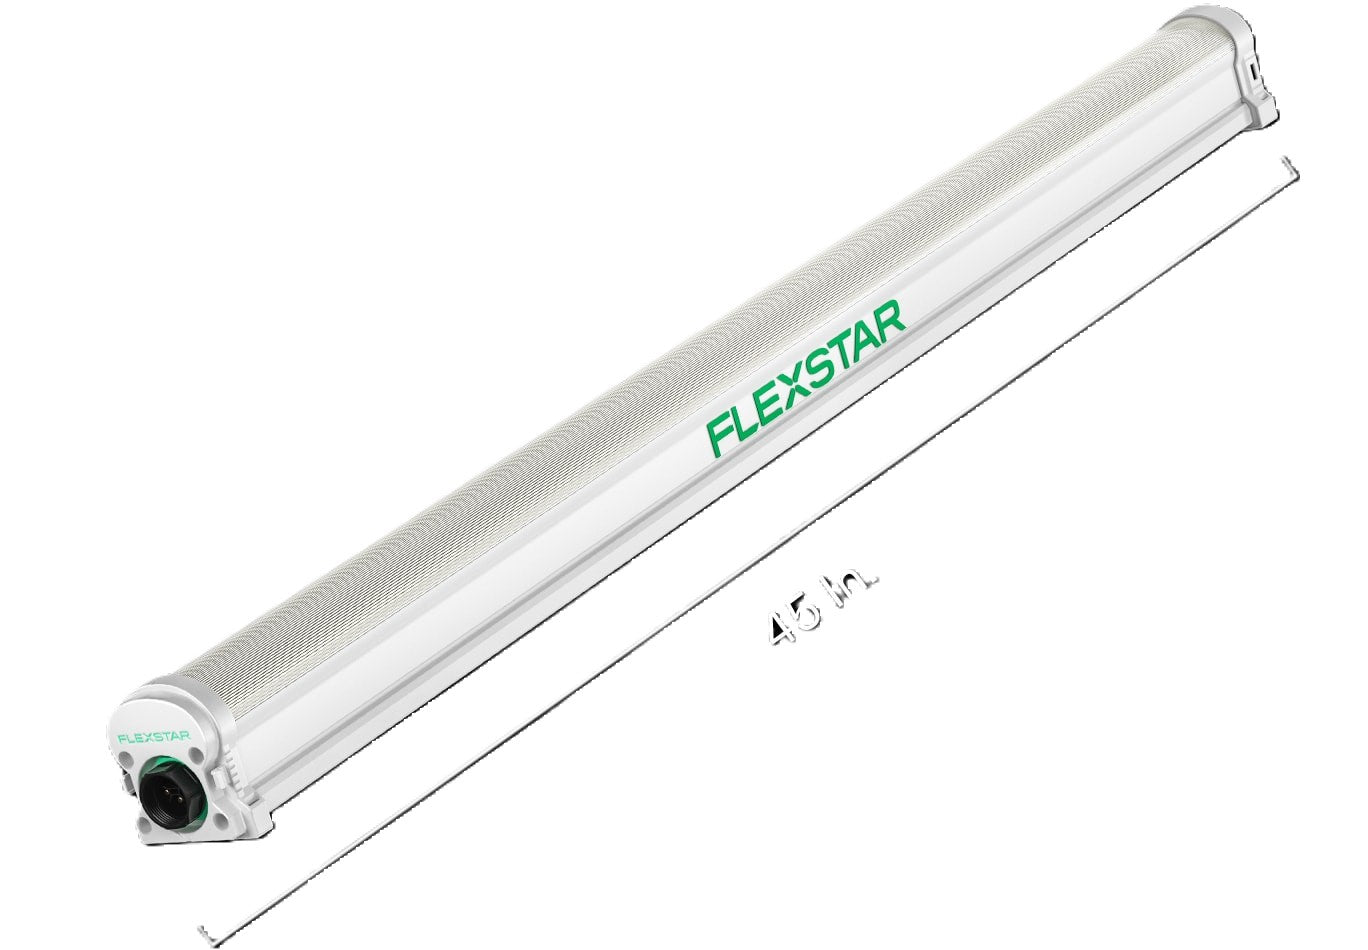 Flexstar 120W Under Canopy LED Light 120-277v